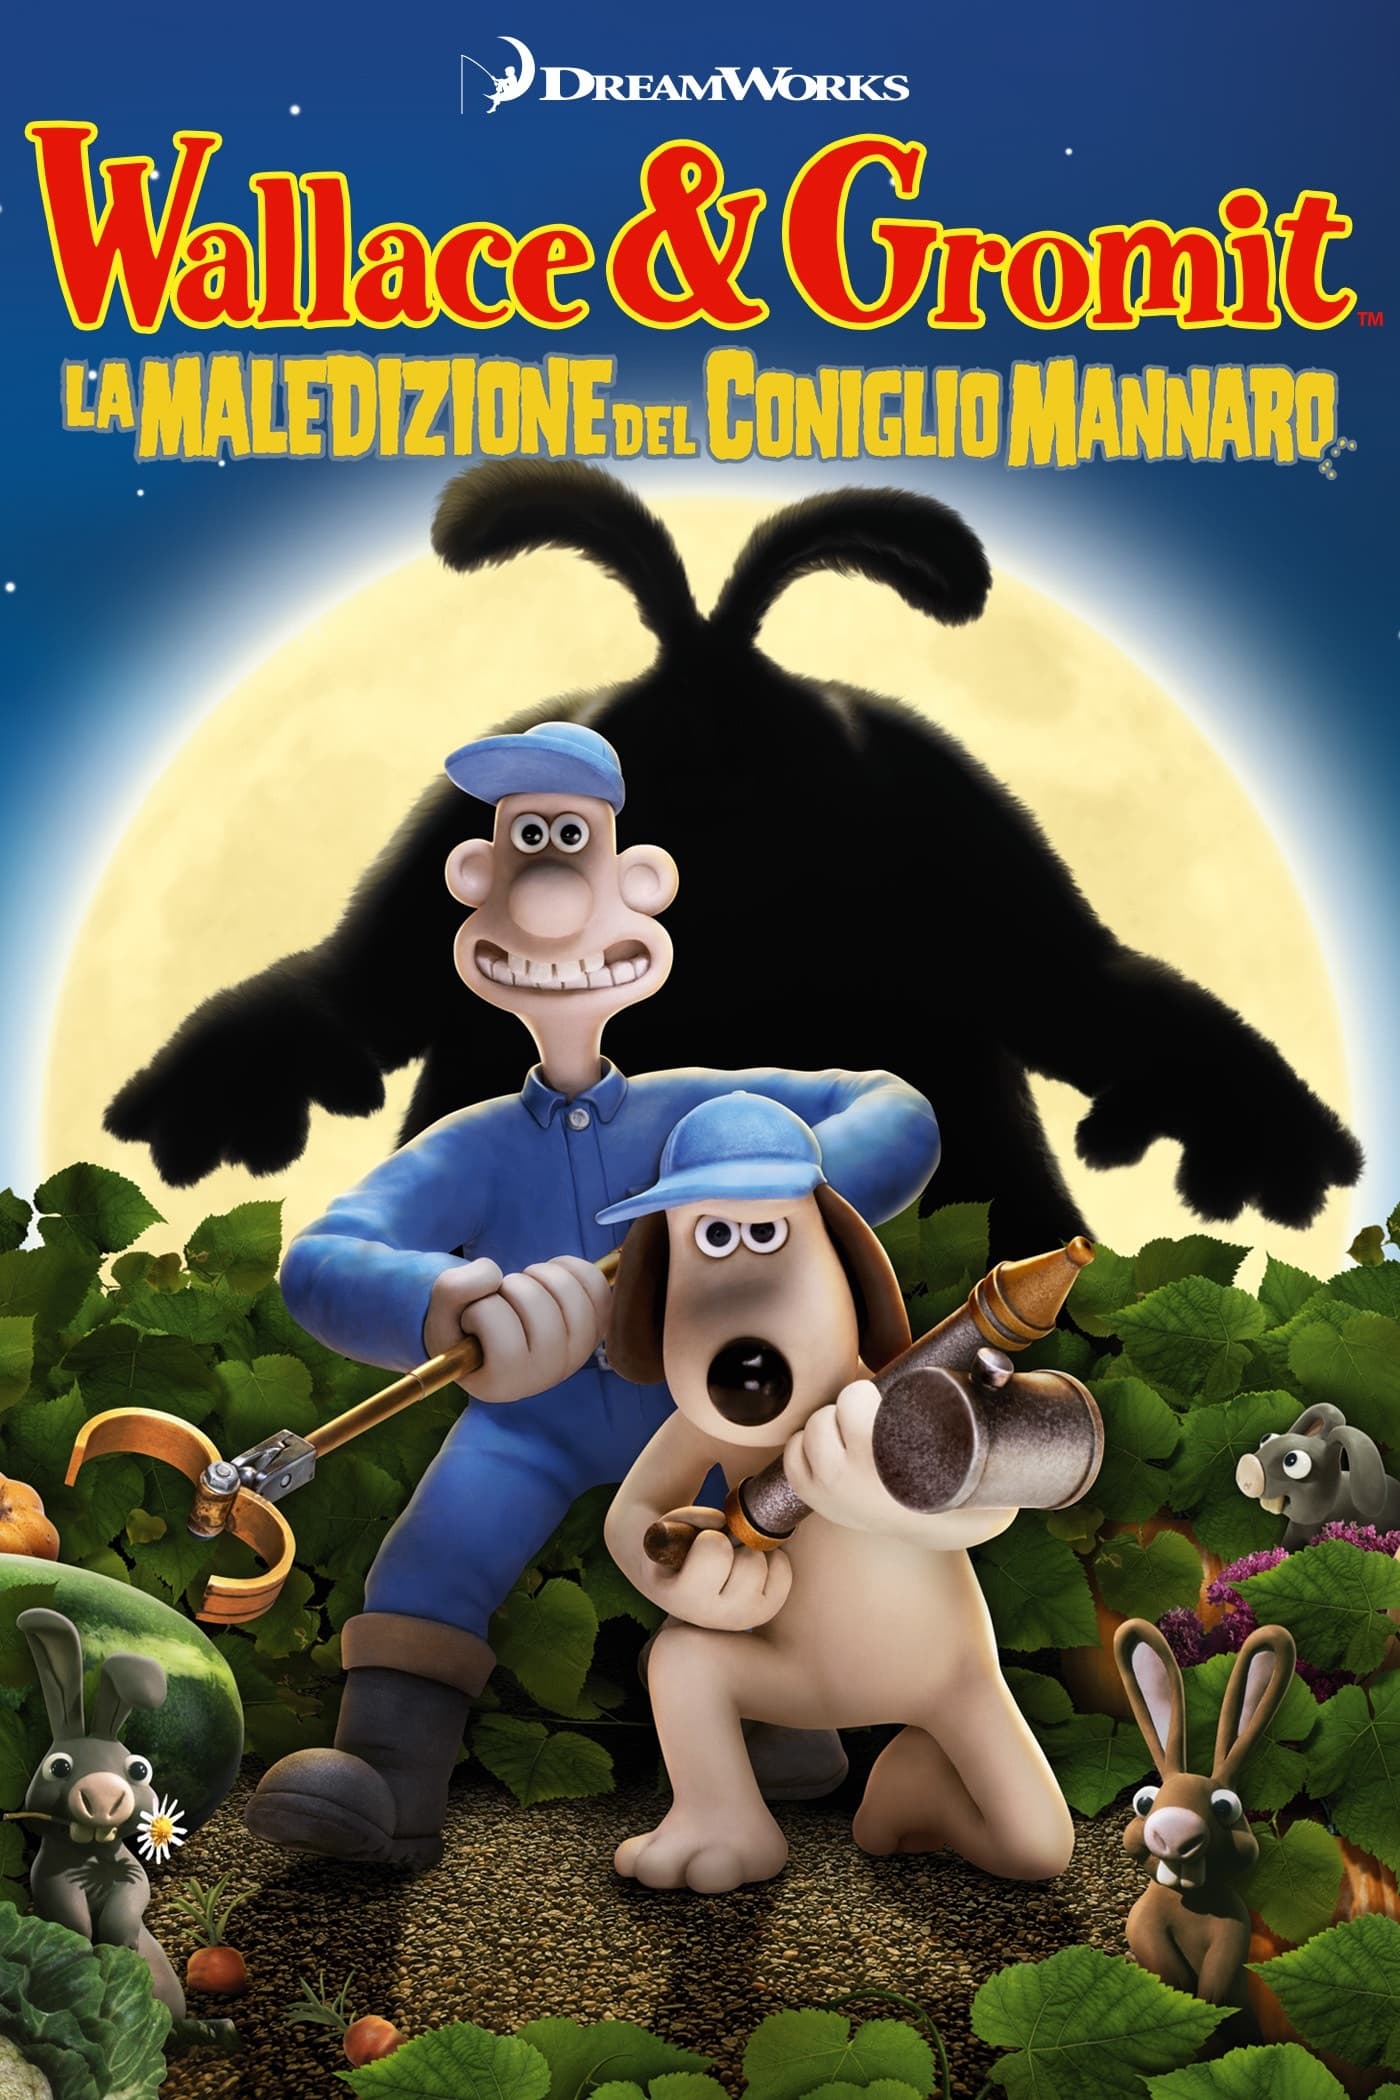 Wallace & Gromit – La maledizione del coniglio mannaro [HD] (2005)